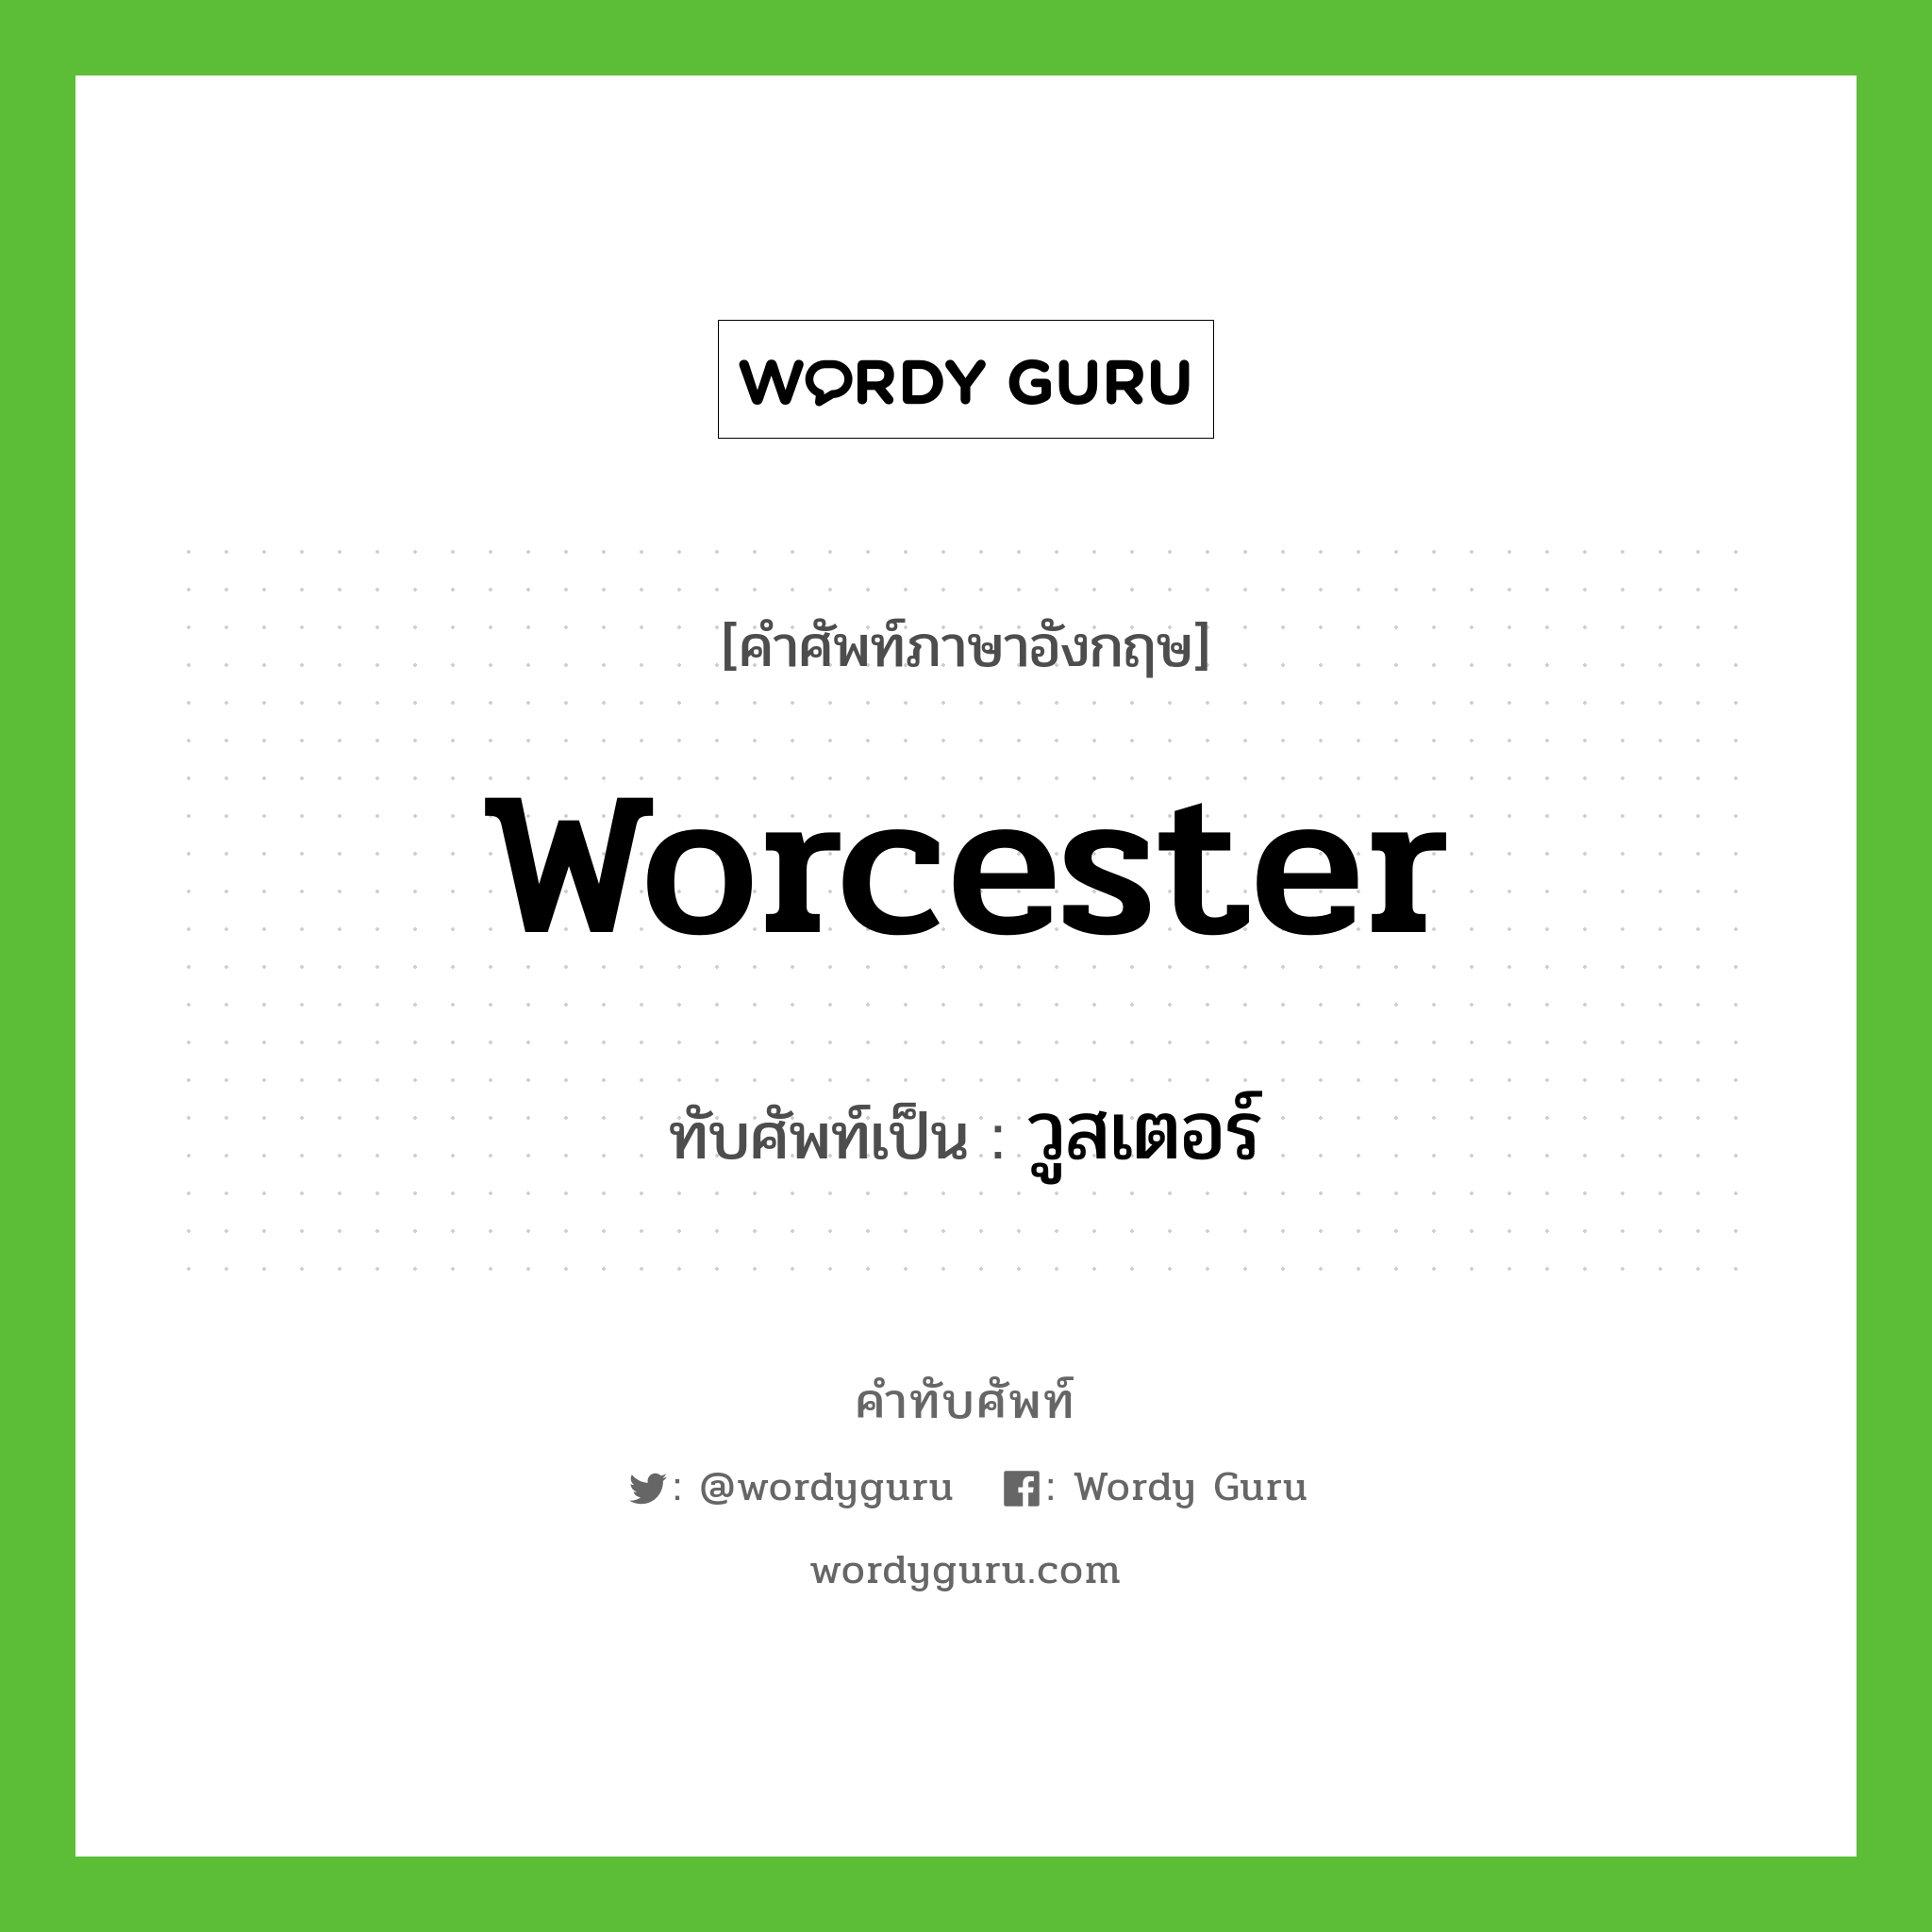 Worcester เขียนเป็นคำไทยว่าอะไร?, คำศัพท์ภาษาอังกฤษ Worcester ทับศัพท์เป็น วูสเตอร์